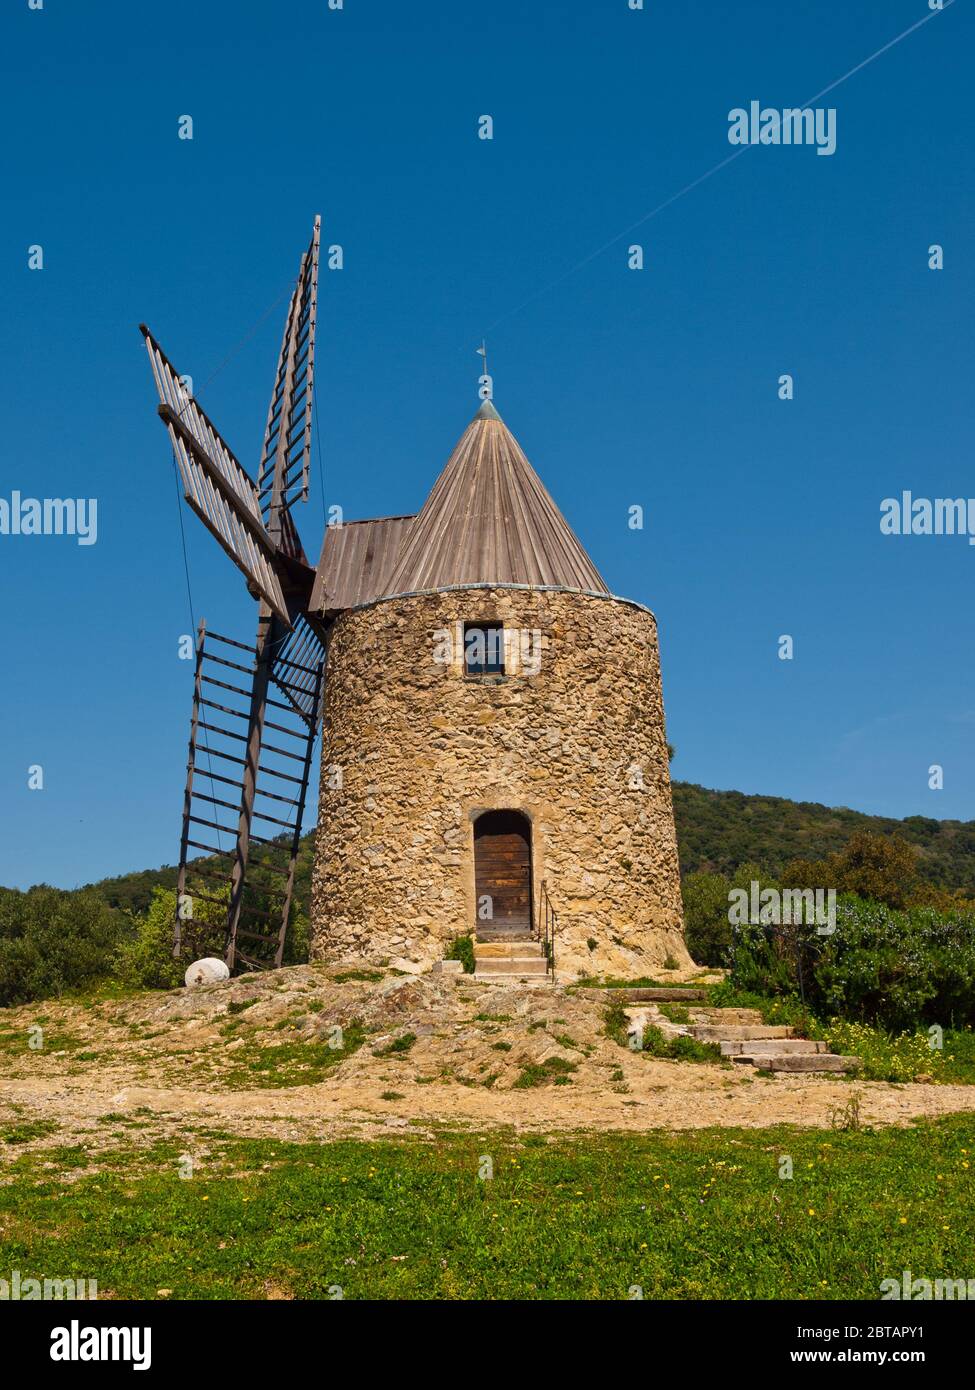 Moulin Saint Roch (Moulin Saint Roch) dans le village de Grimaud, Côte d'Azur, Provence, Sud de la France Banque D'Images